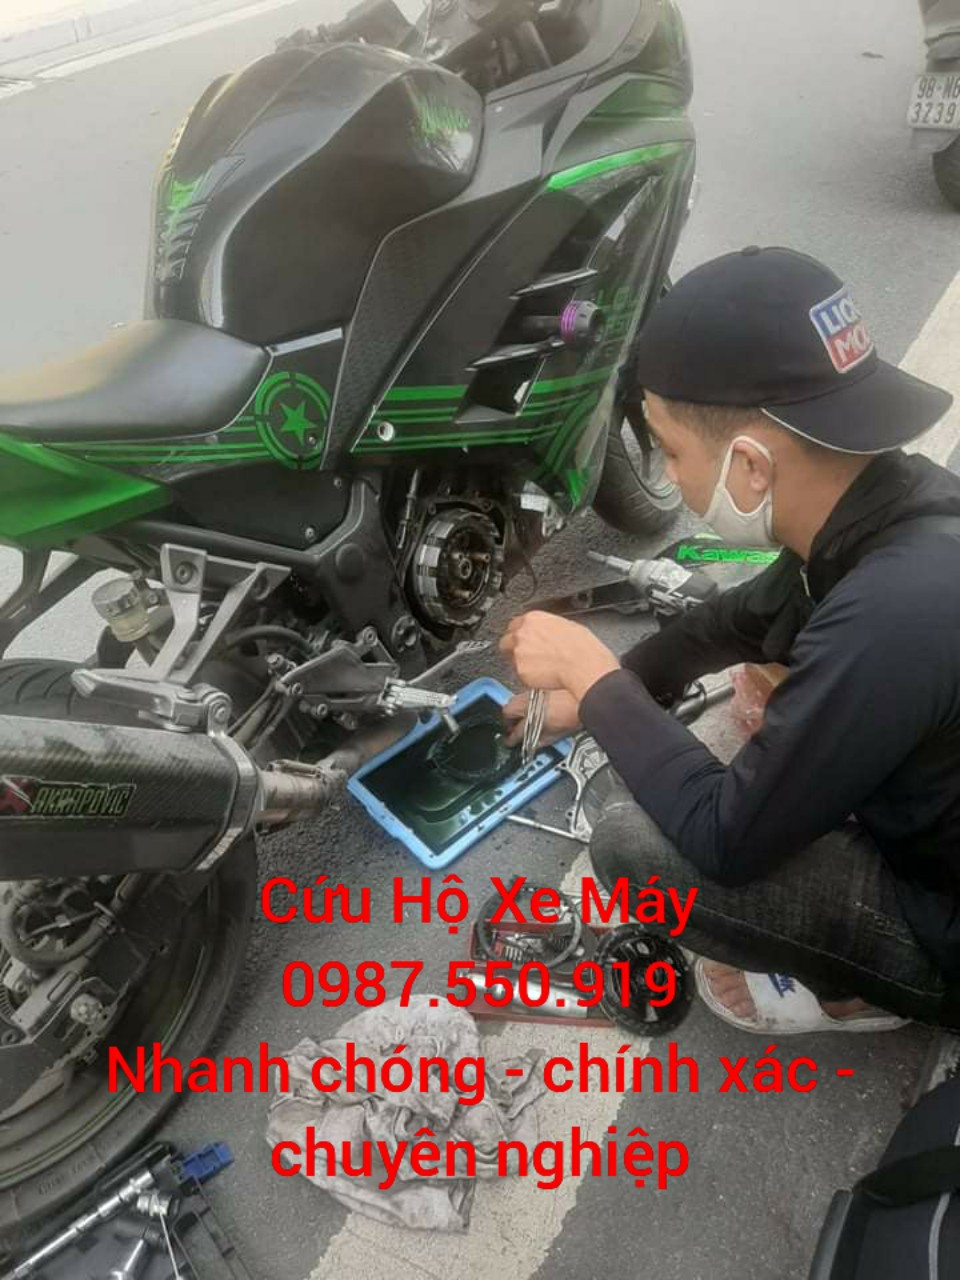 Cứu hộ xe máy quận 1 24/24 – Sửa xe lưu động Sài Gòn